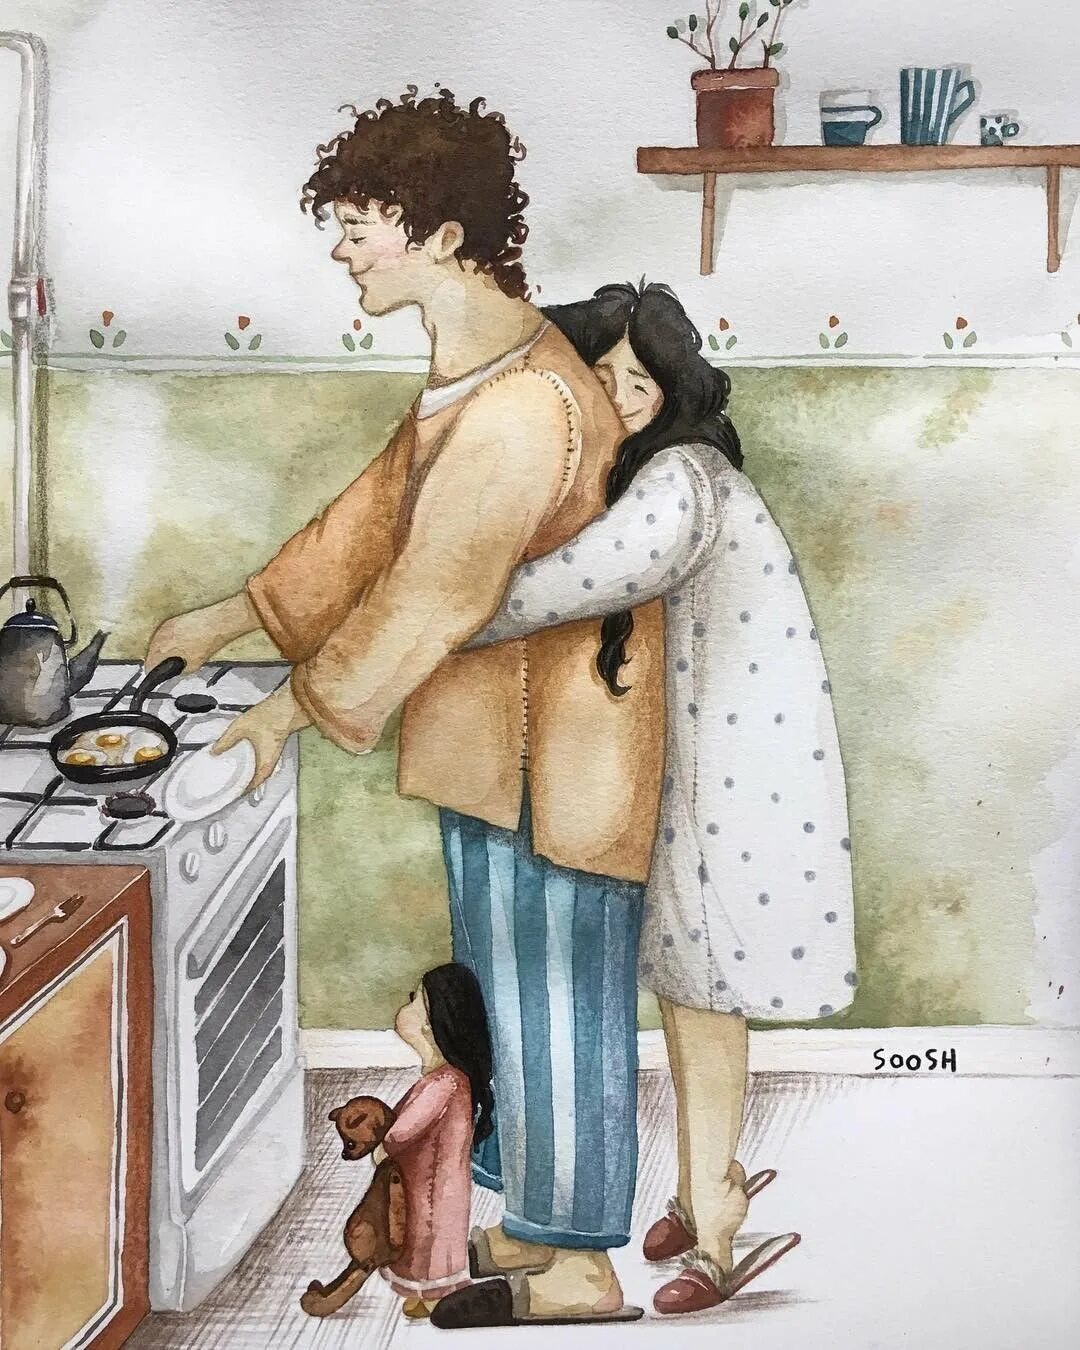 Русская жена ждет мужа. Художница Soosh. Soosh иллюстрации о семье. Трогательные иллюстрации. Уютные иллюстрации.